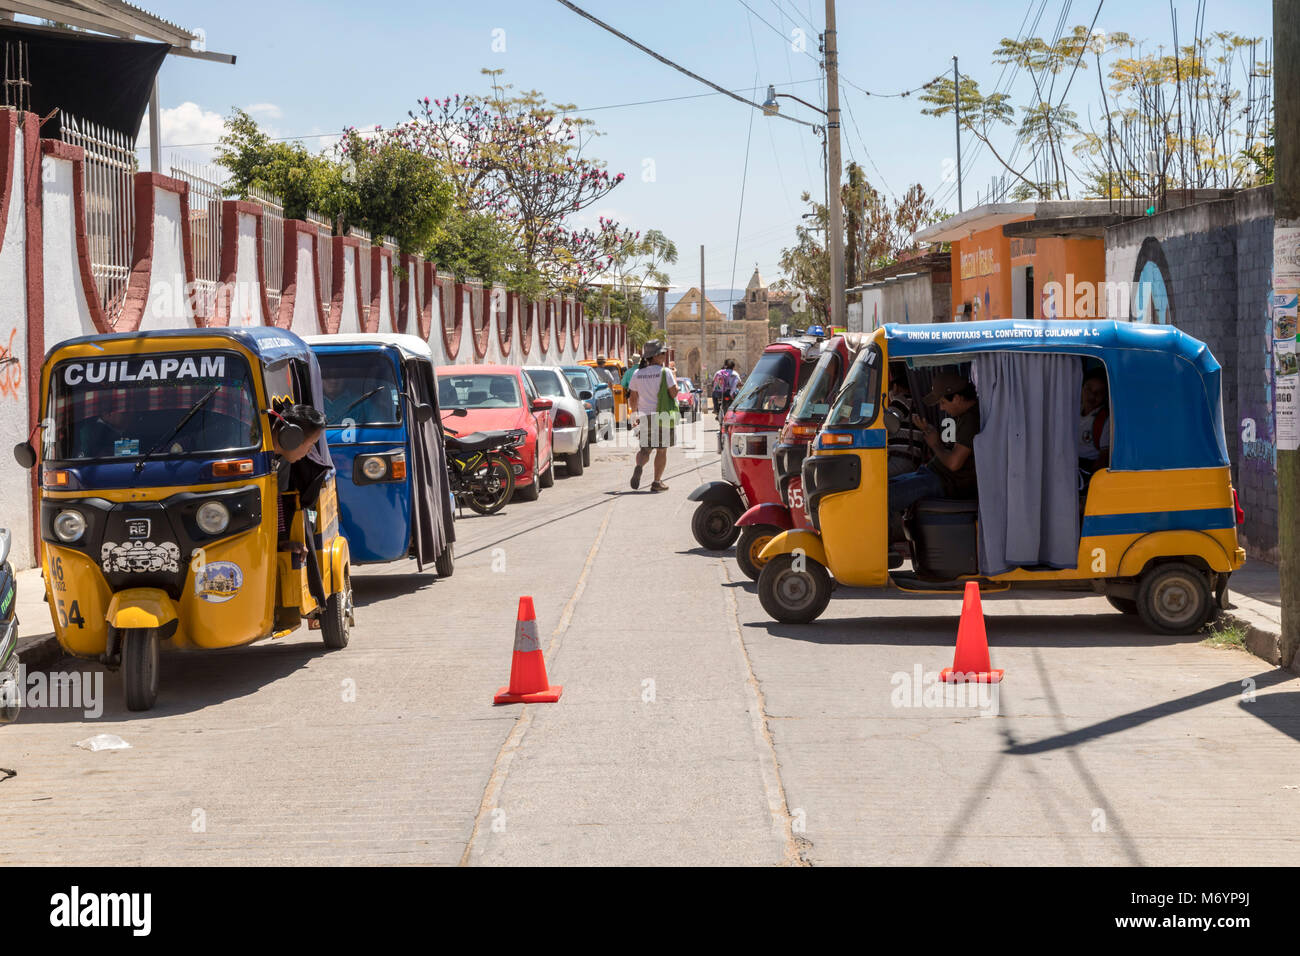 Cuilapam de Guerrero, Oaxaca, Mexique - Trois roues taxis ville, faite par la société indienne, Tata Motors. Banque D'Images